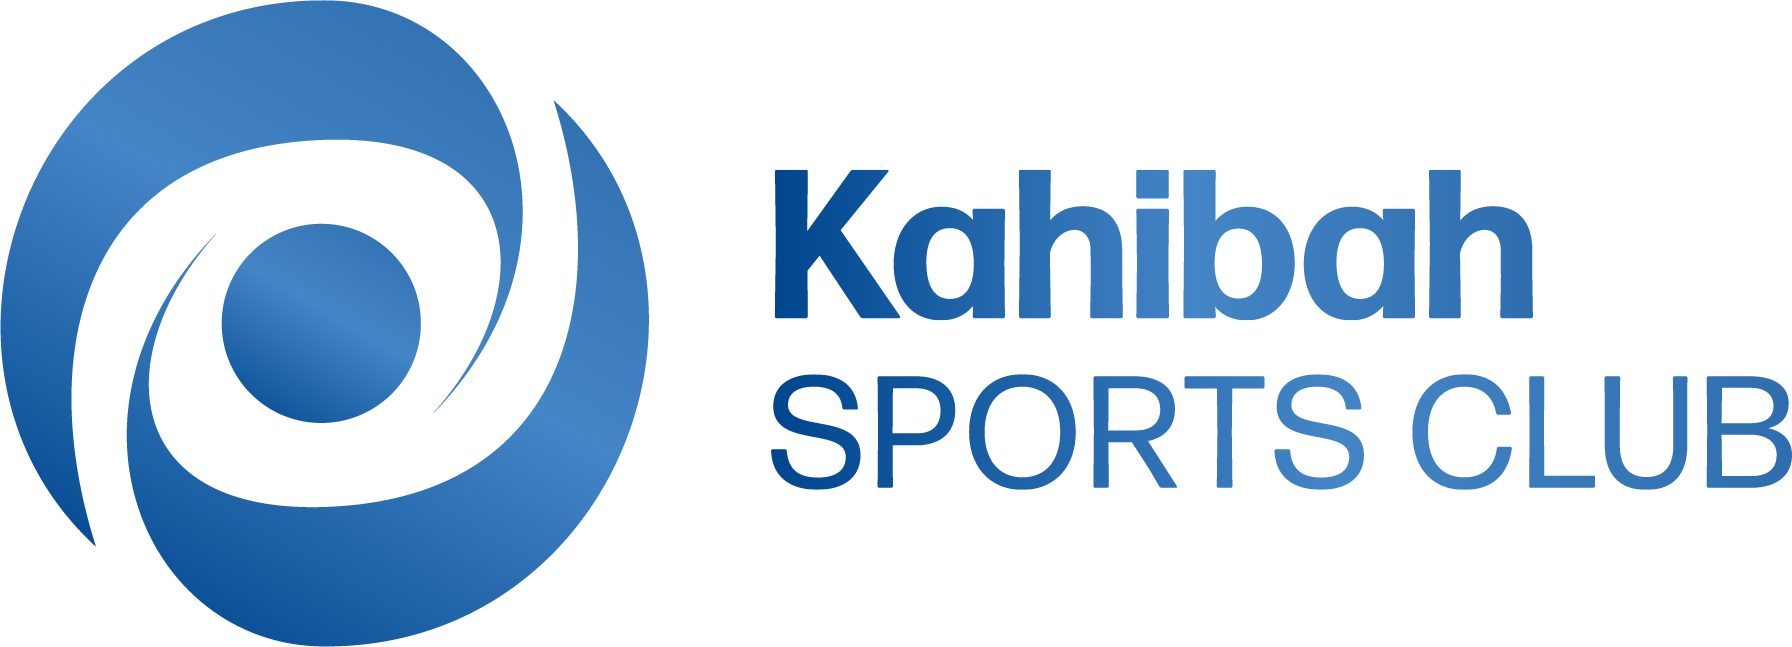 Kahibah Sports Club